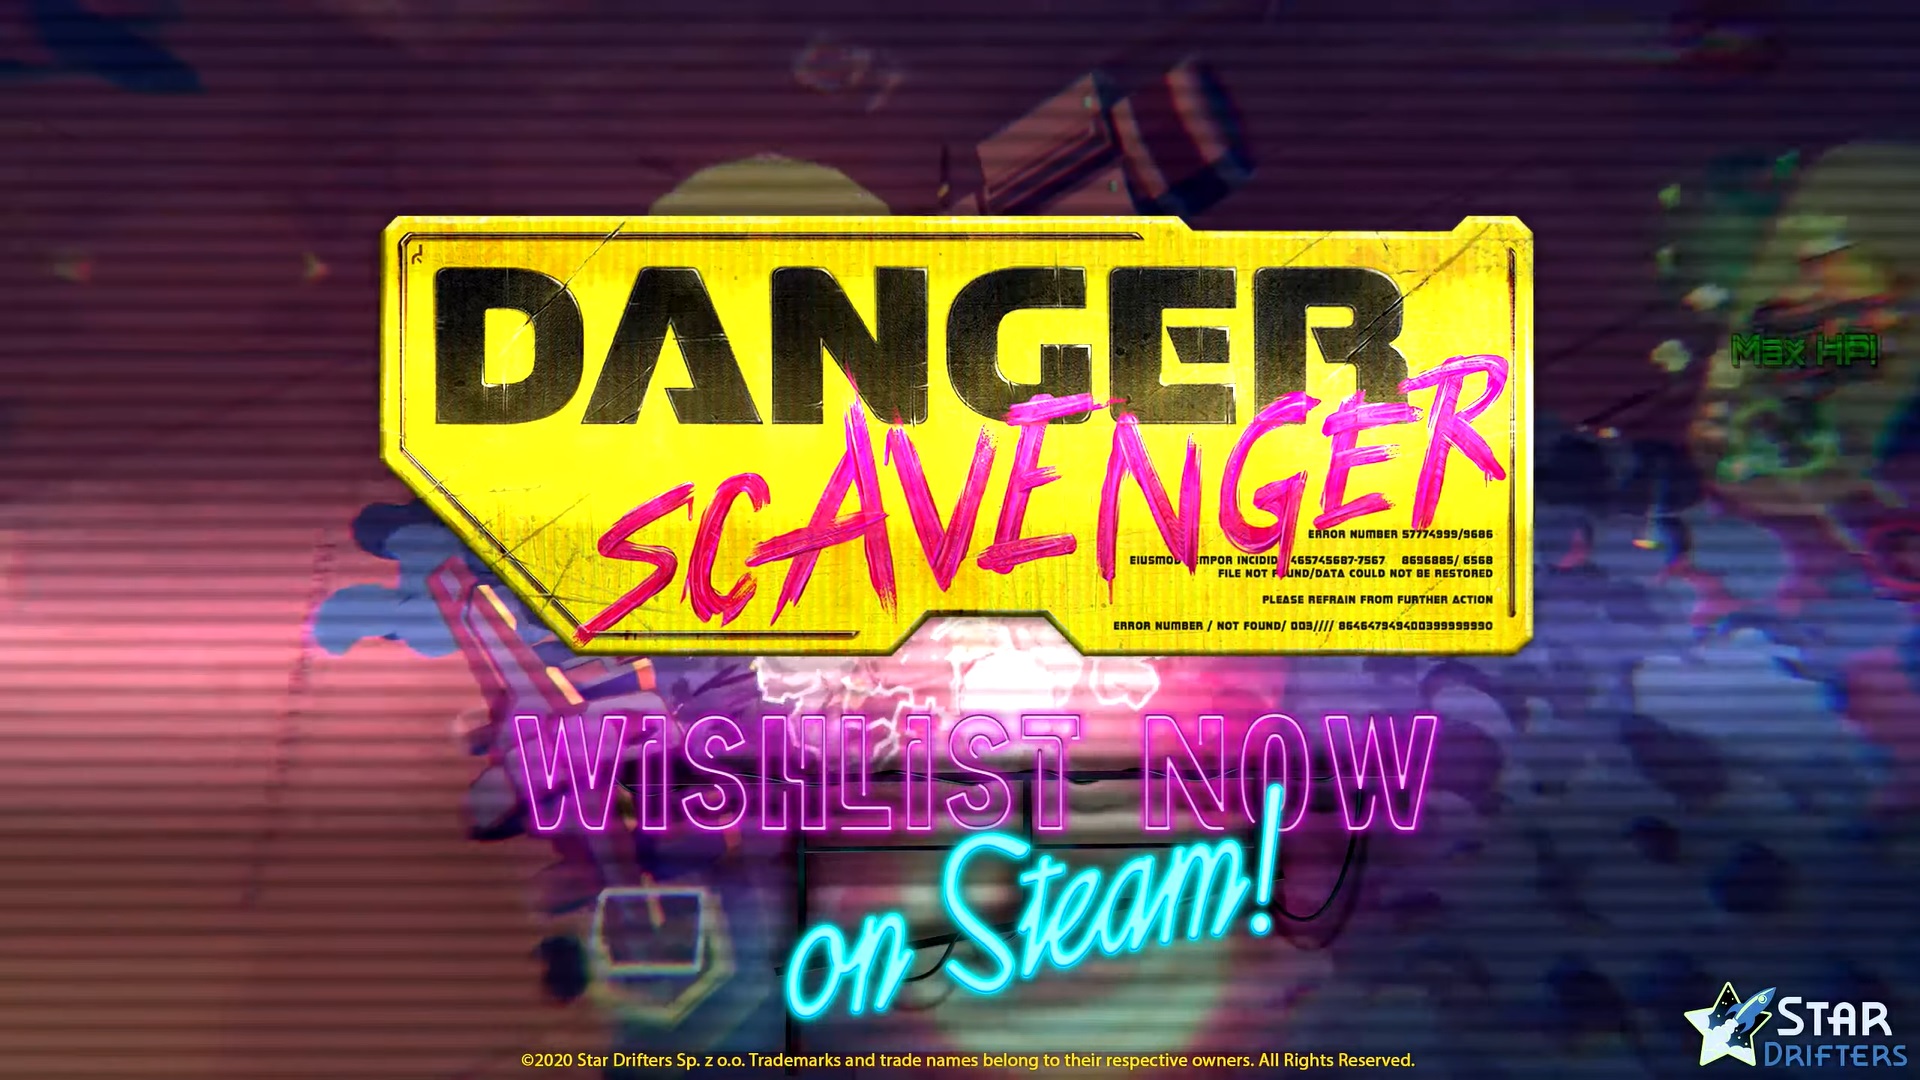 Danger Scavenger for mac download